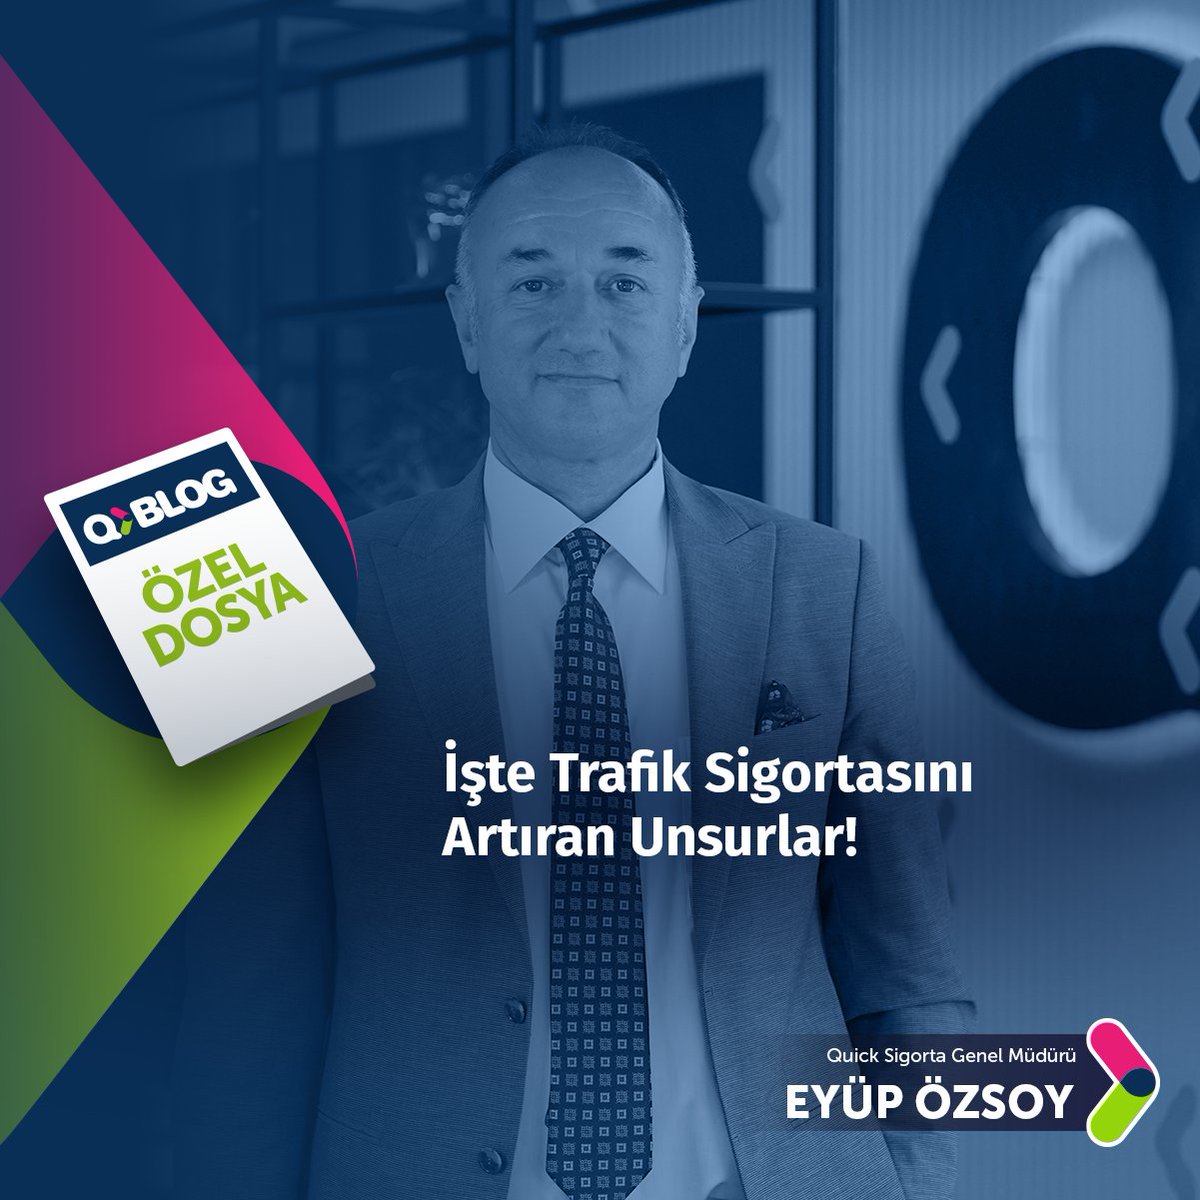 Quick Sigorta Genel Müdürü Eyüp Özsoy, zorunlu trafik sigortasının artmasına neden olan unsurları kalem kalem #QBlog'da anlattı. 🚗 Detaylar: 👉🏻 blog.quicksigorta.com/sigortacilik/i… #TrafikSigortası #QuickSigorta